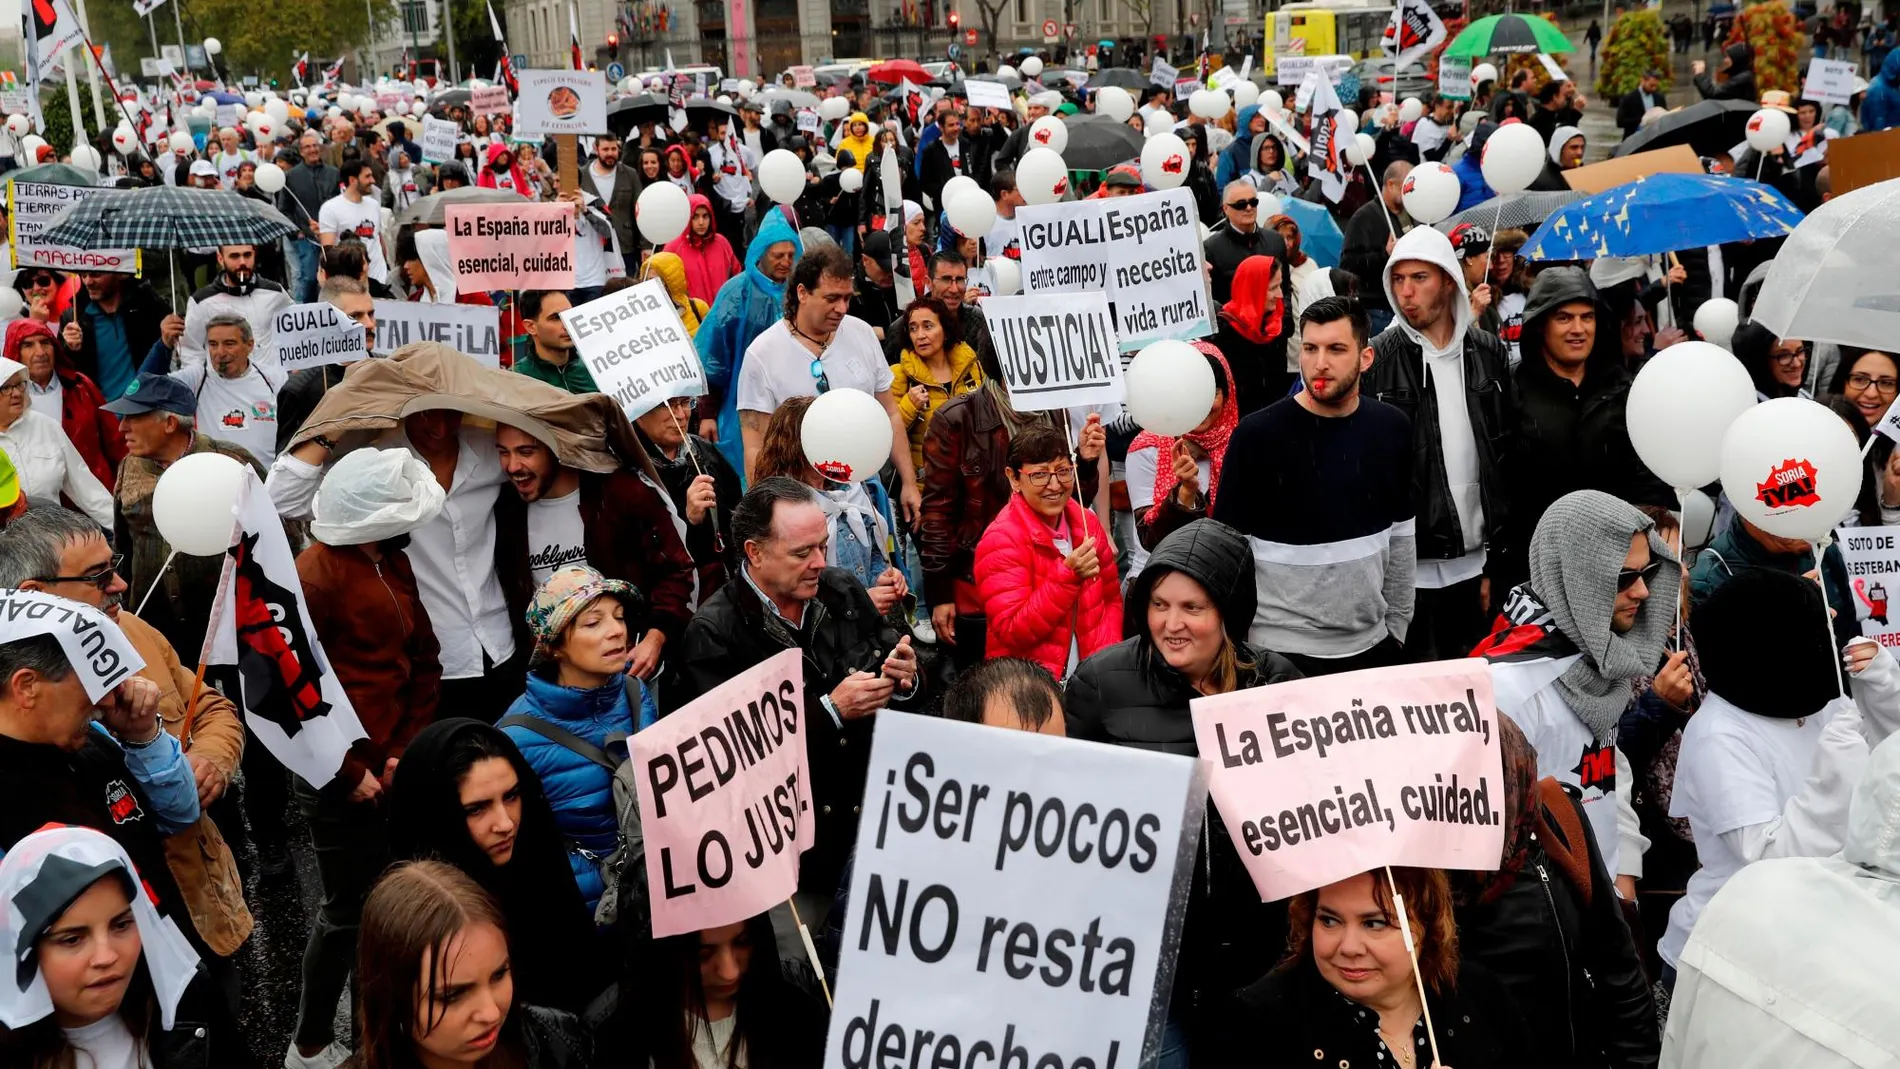 La marcha ha arrancado desde las inmediaciones de la Plaza de la Colón de Madrid con una participación multitudinaria